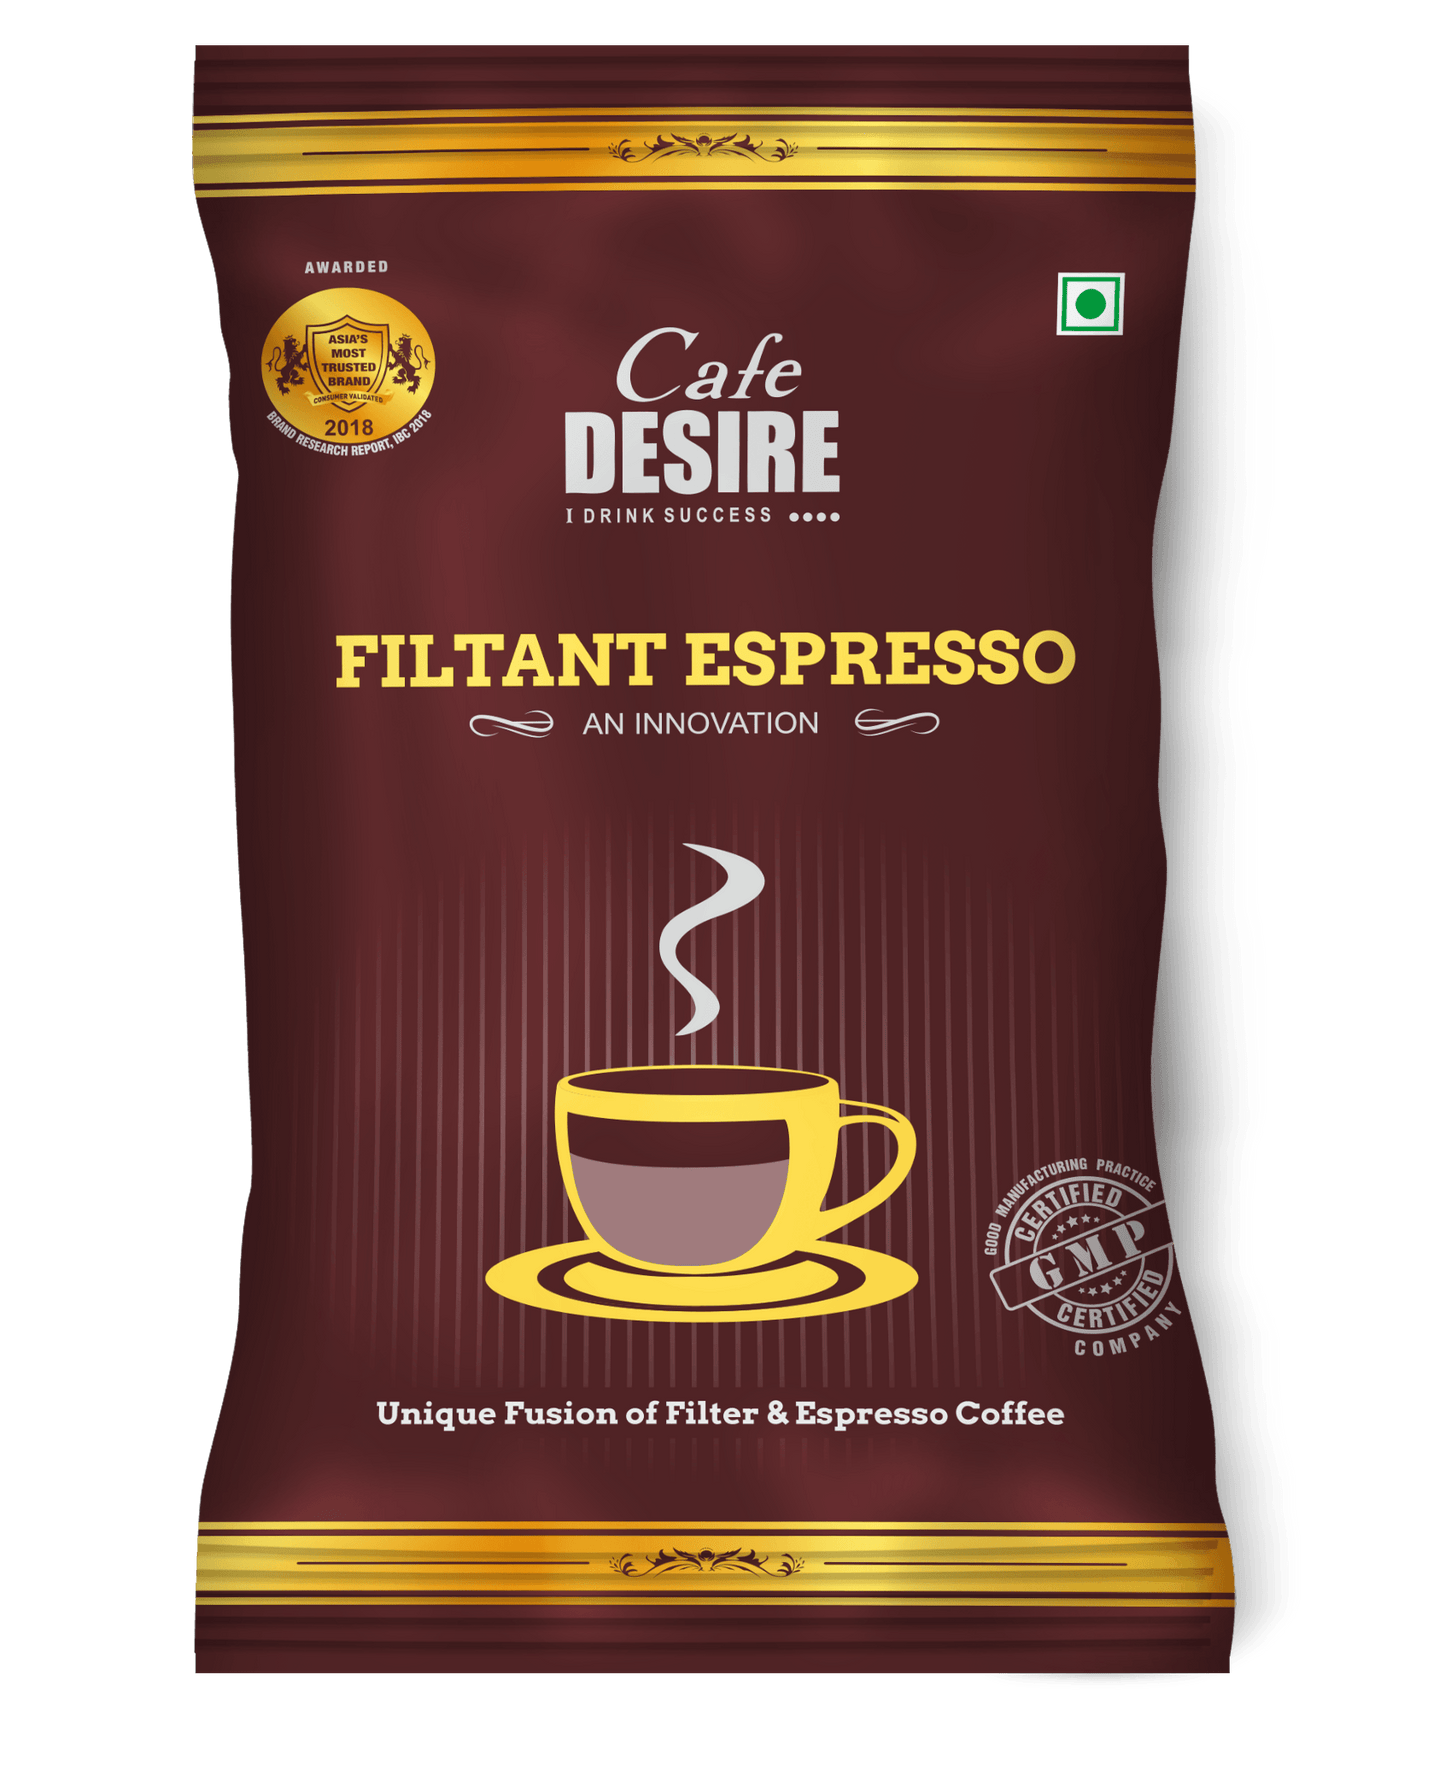 Filtant Espresso 1Kg (100g X 10 No.s) - Cafe Desire Cafe Desire Cafe Desire Filtant Espresso 1Kg (100g X 10 No.s)